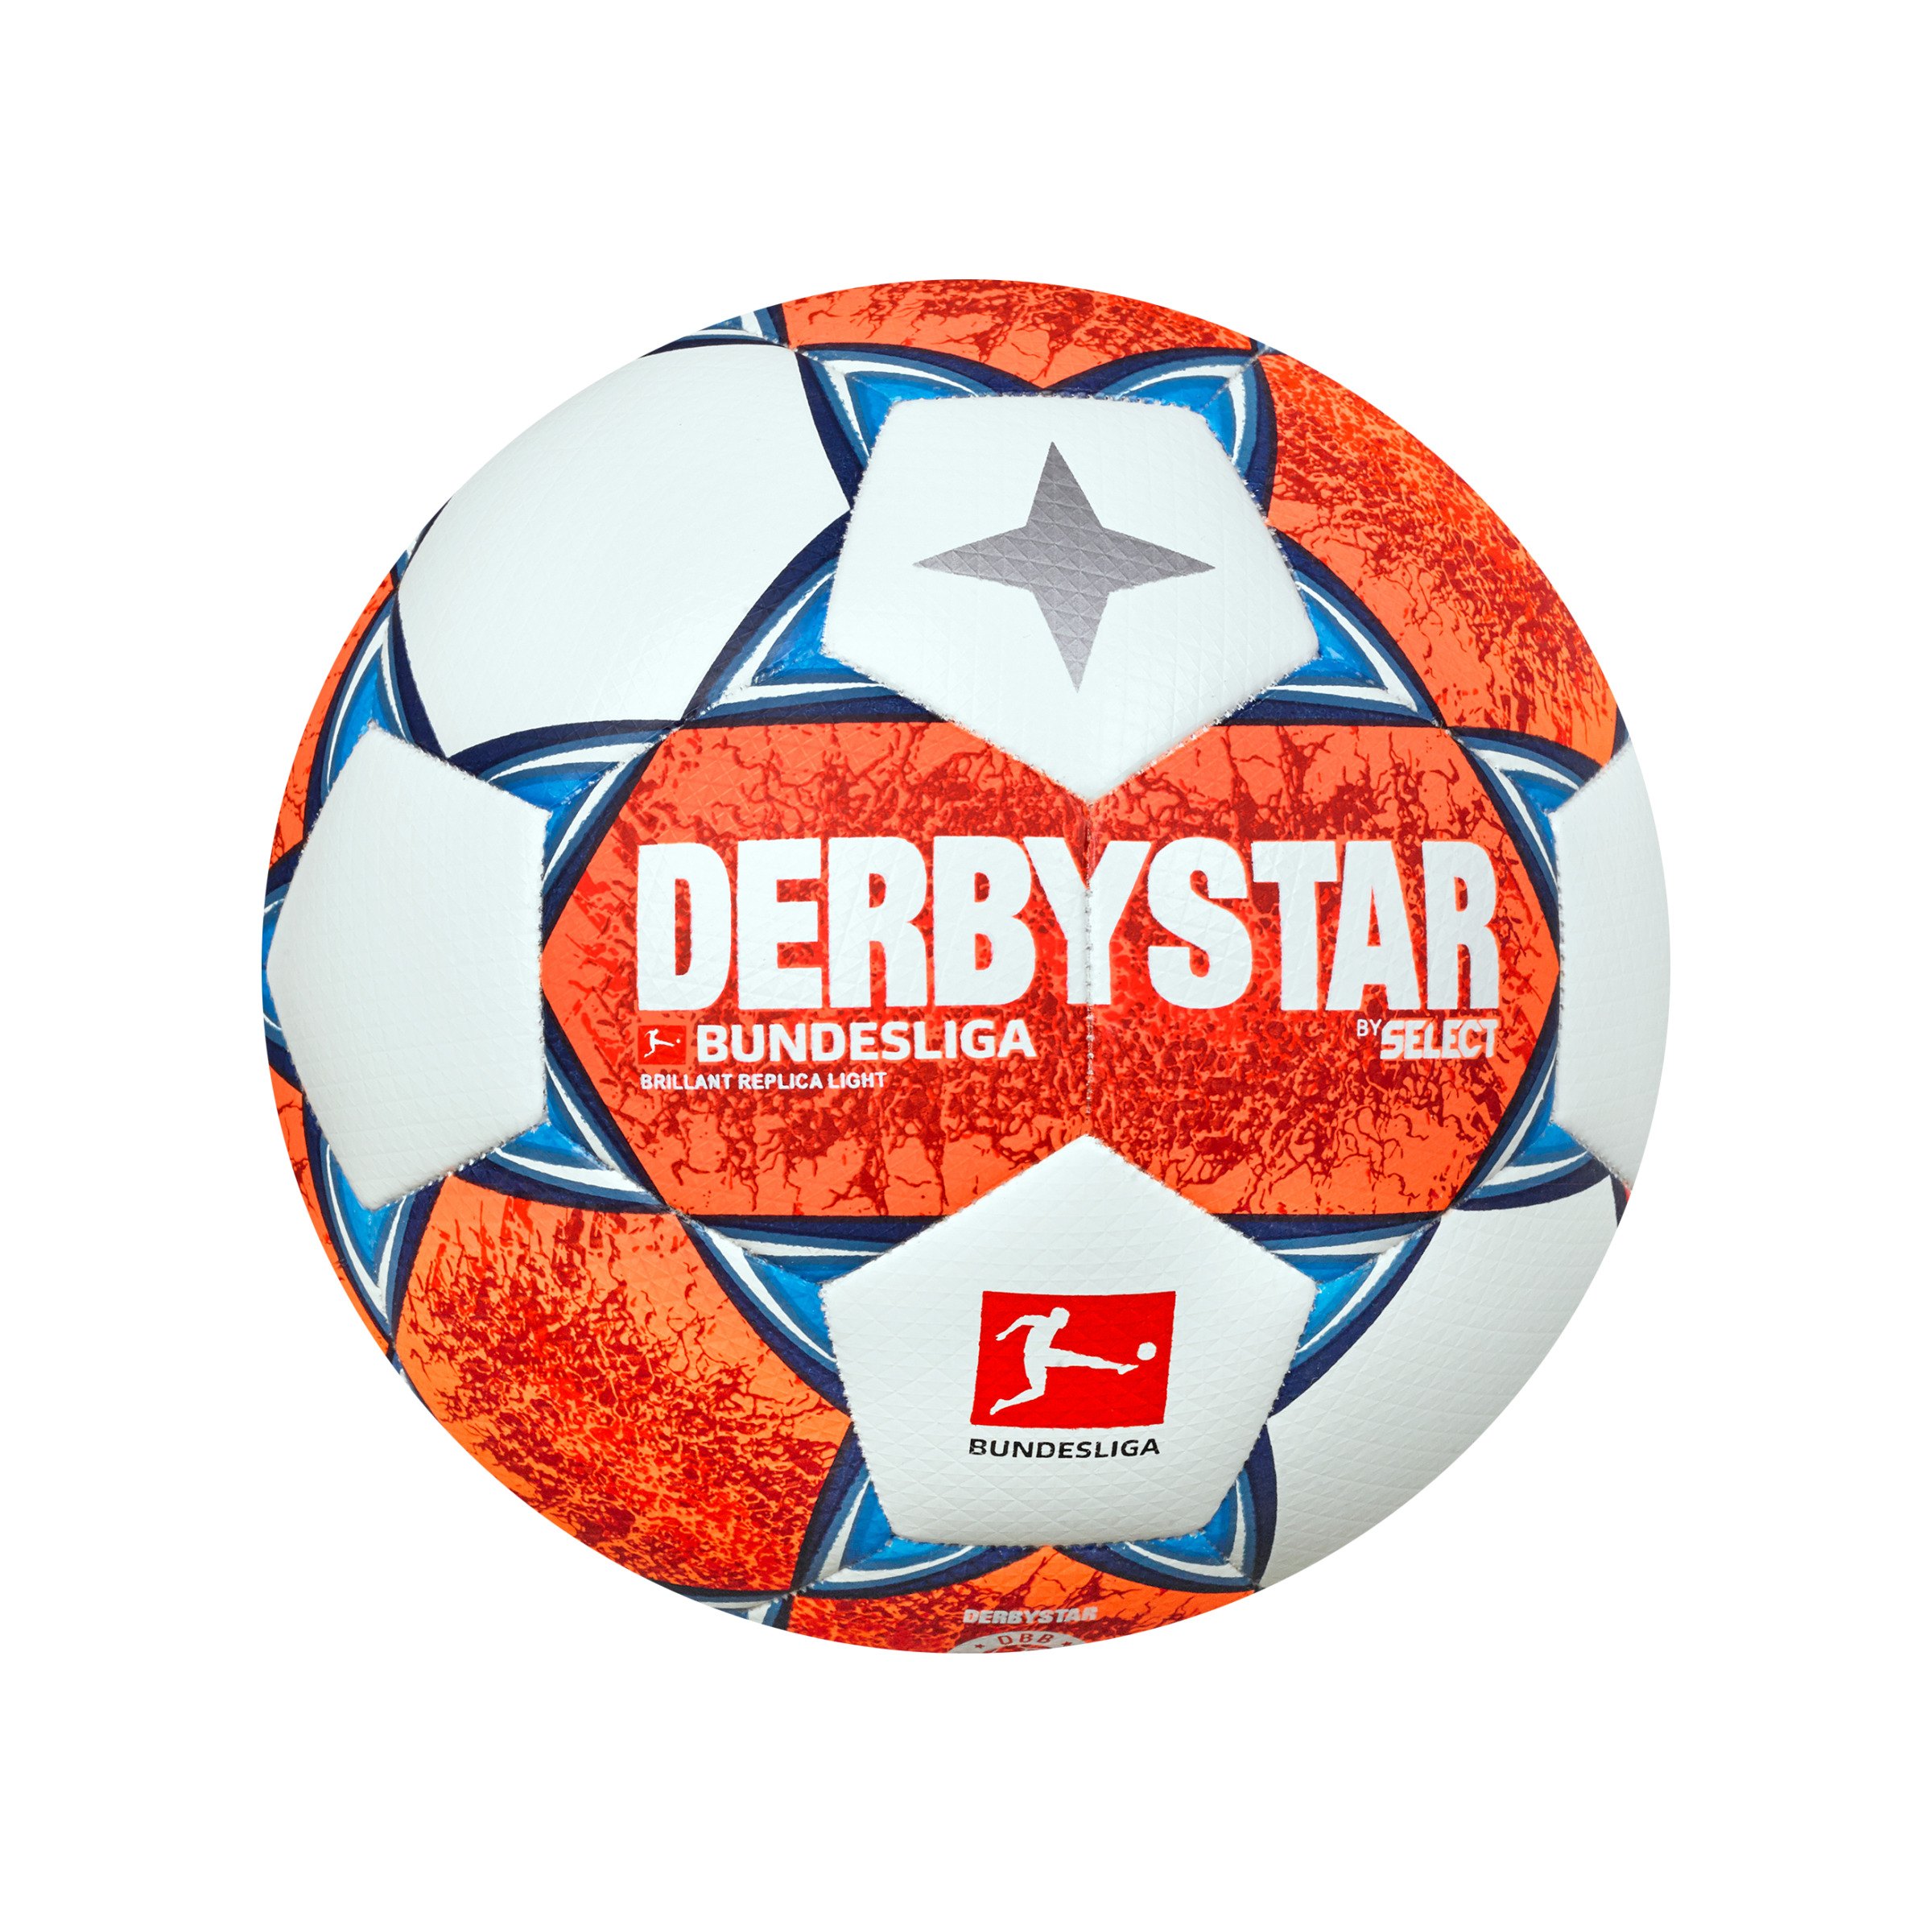 Derbystar Fussball Bundesliga 2020/21  Brillant Replica 